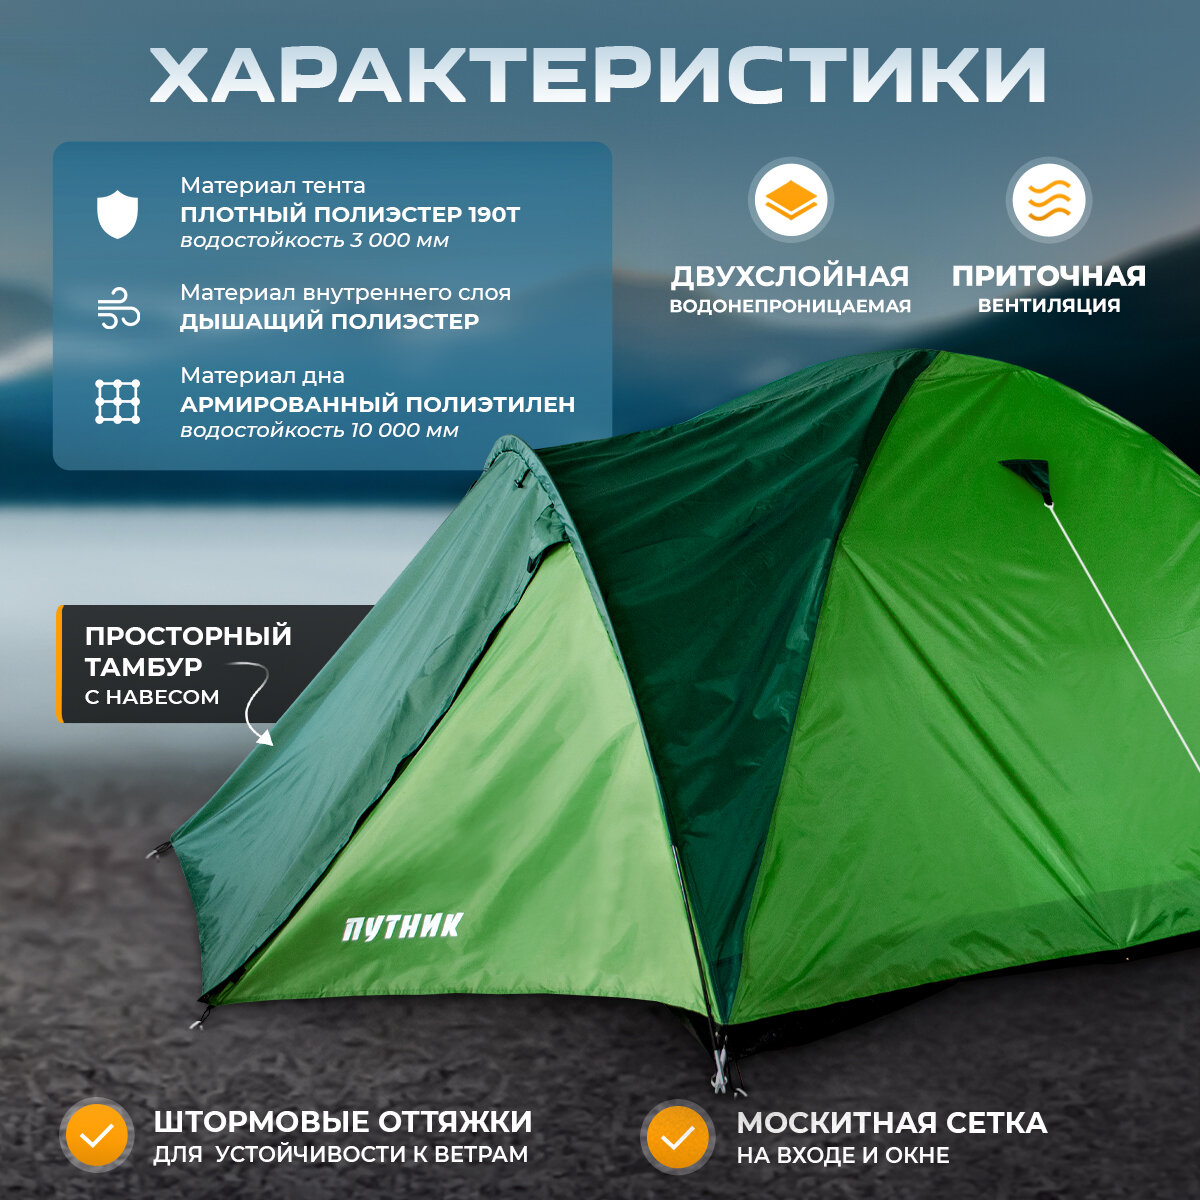 Палатка туристическая для кемпинга "Уран 3" 3-х местная, двухслойная, походная